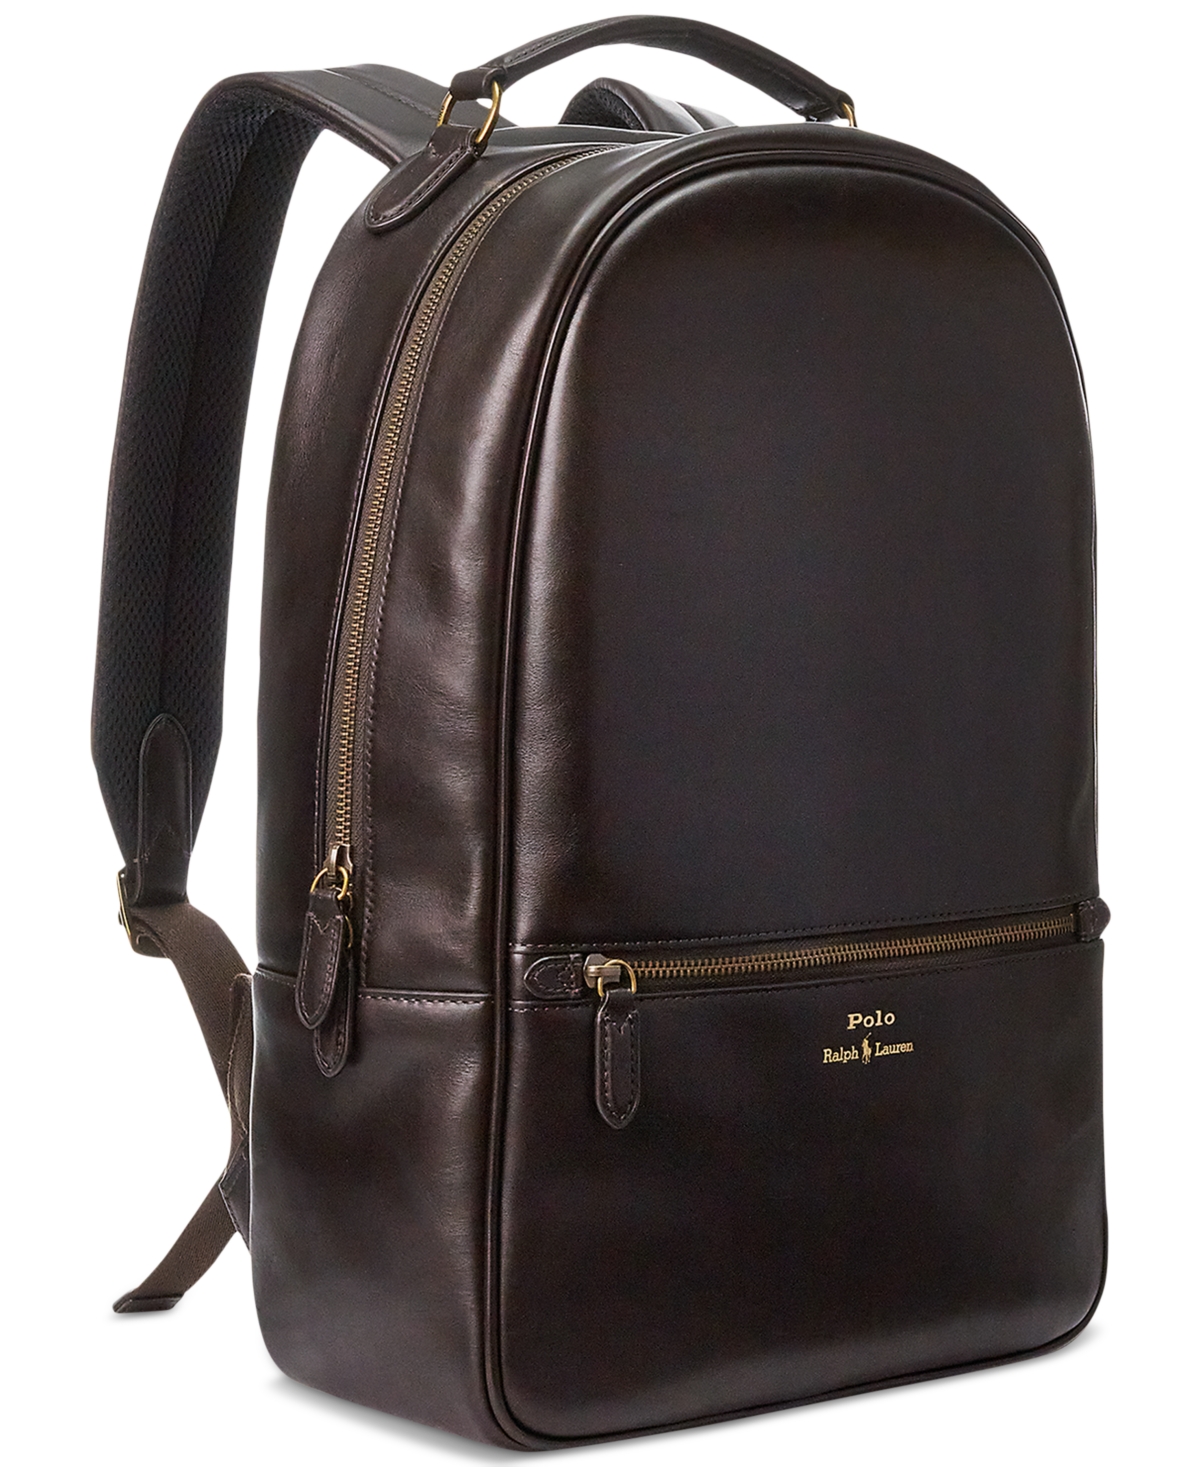 Polo Ralph Lauren Men's Leather Backpack In Dark Brown